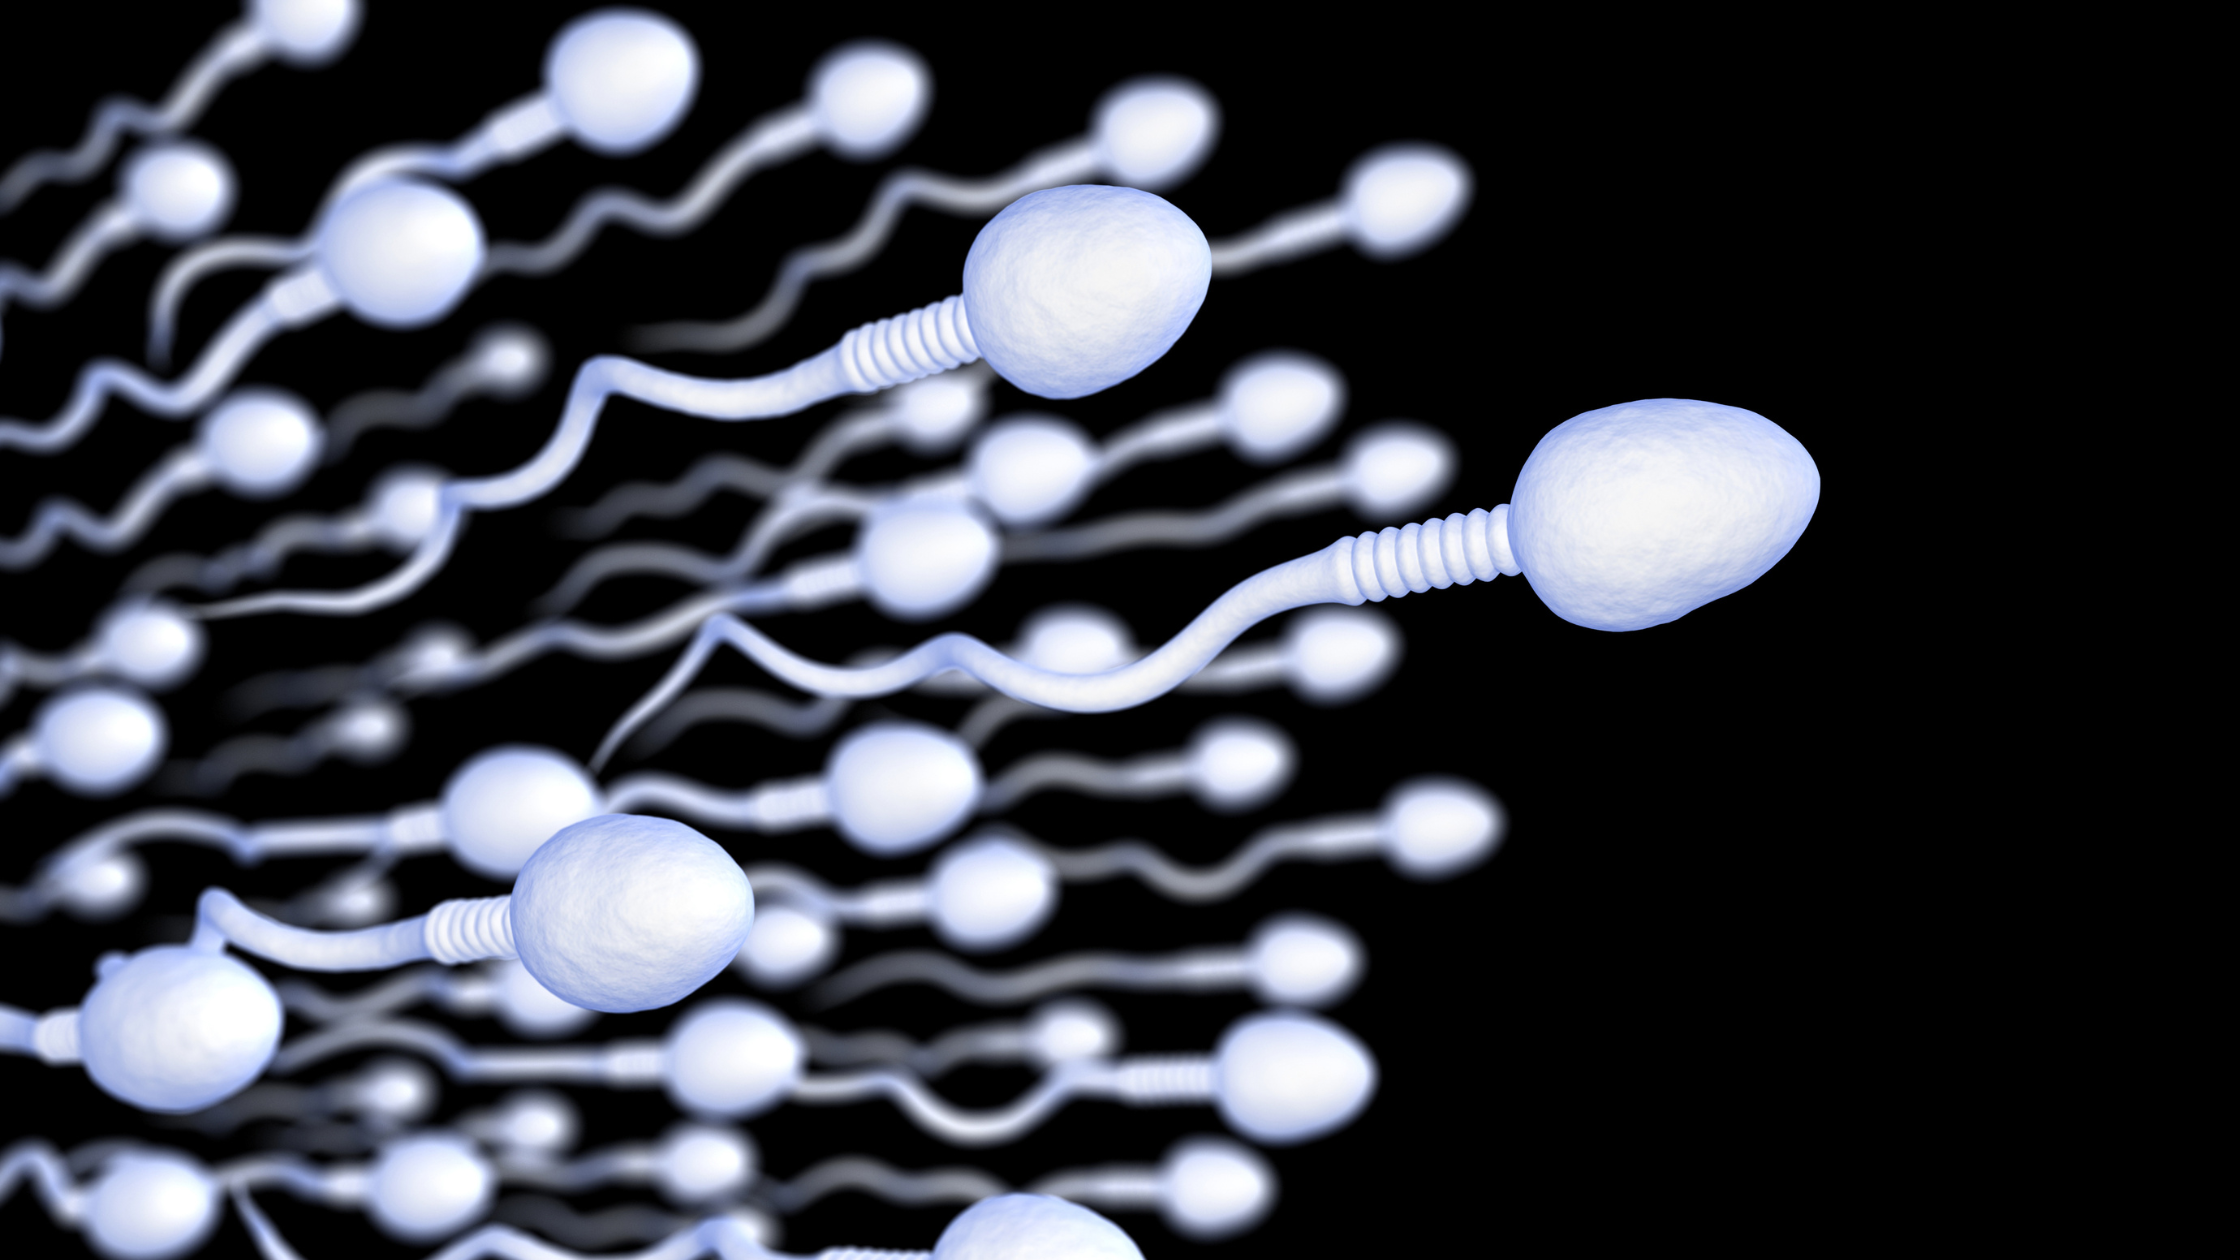 The Fertility Shop - Facts about sperm